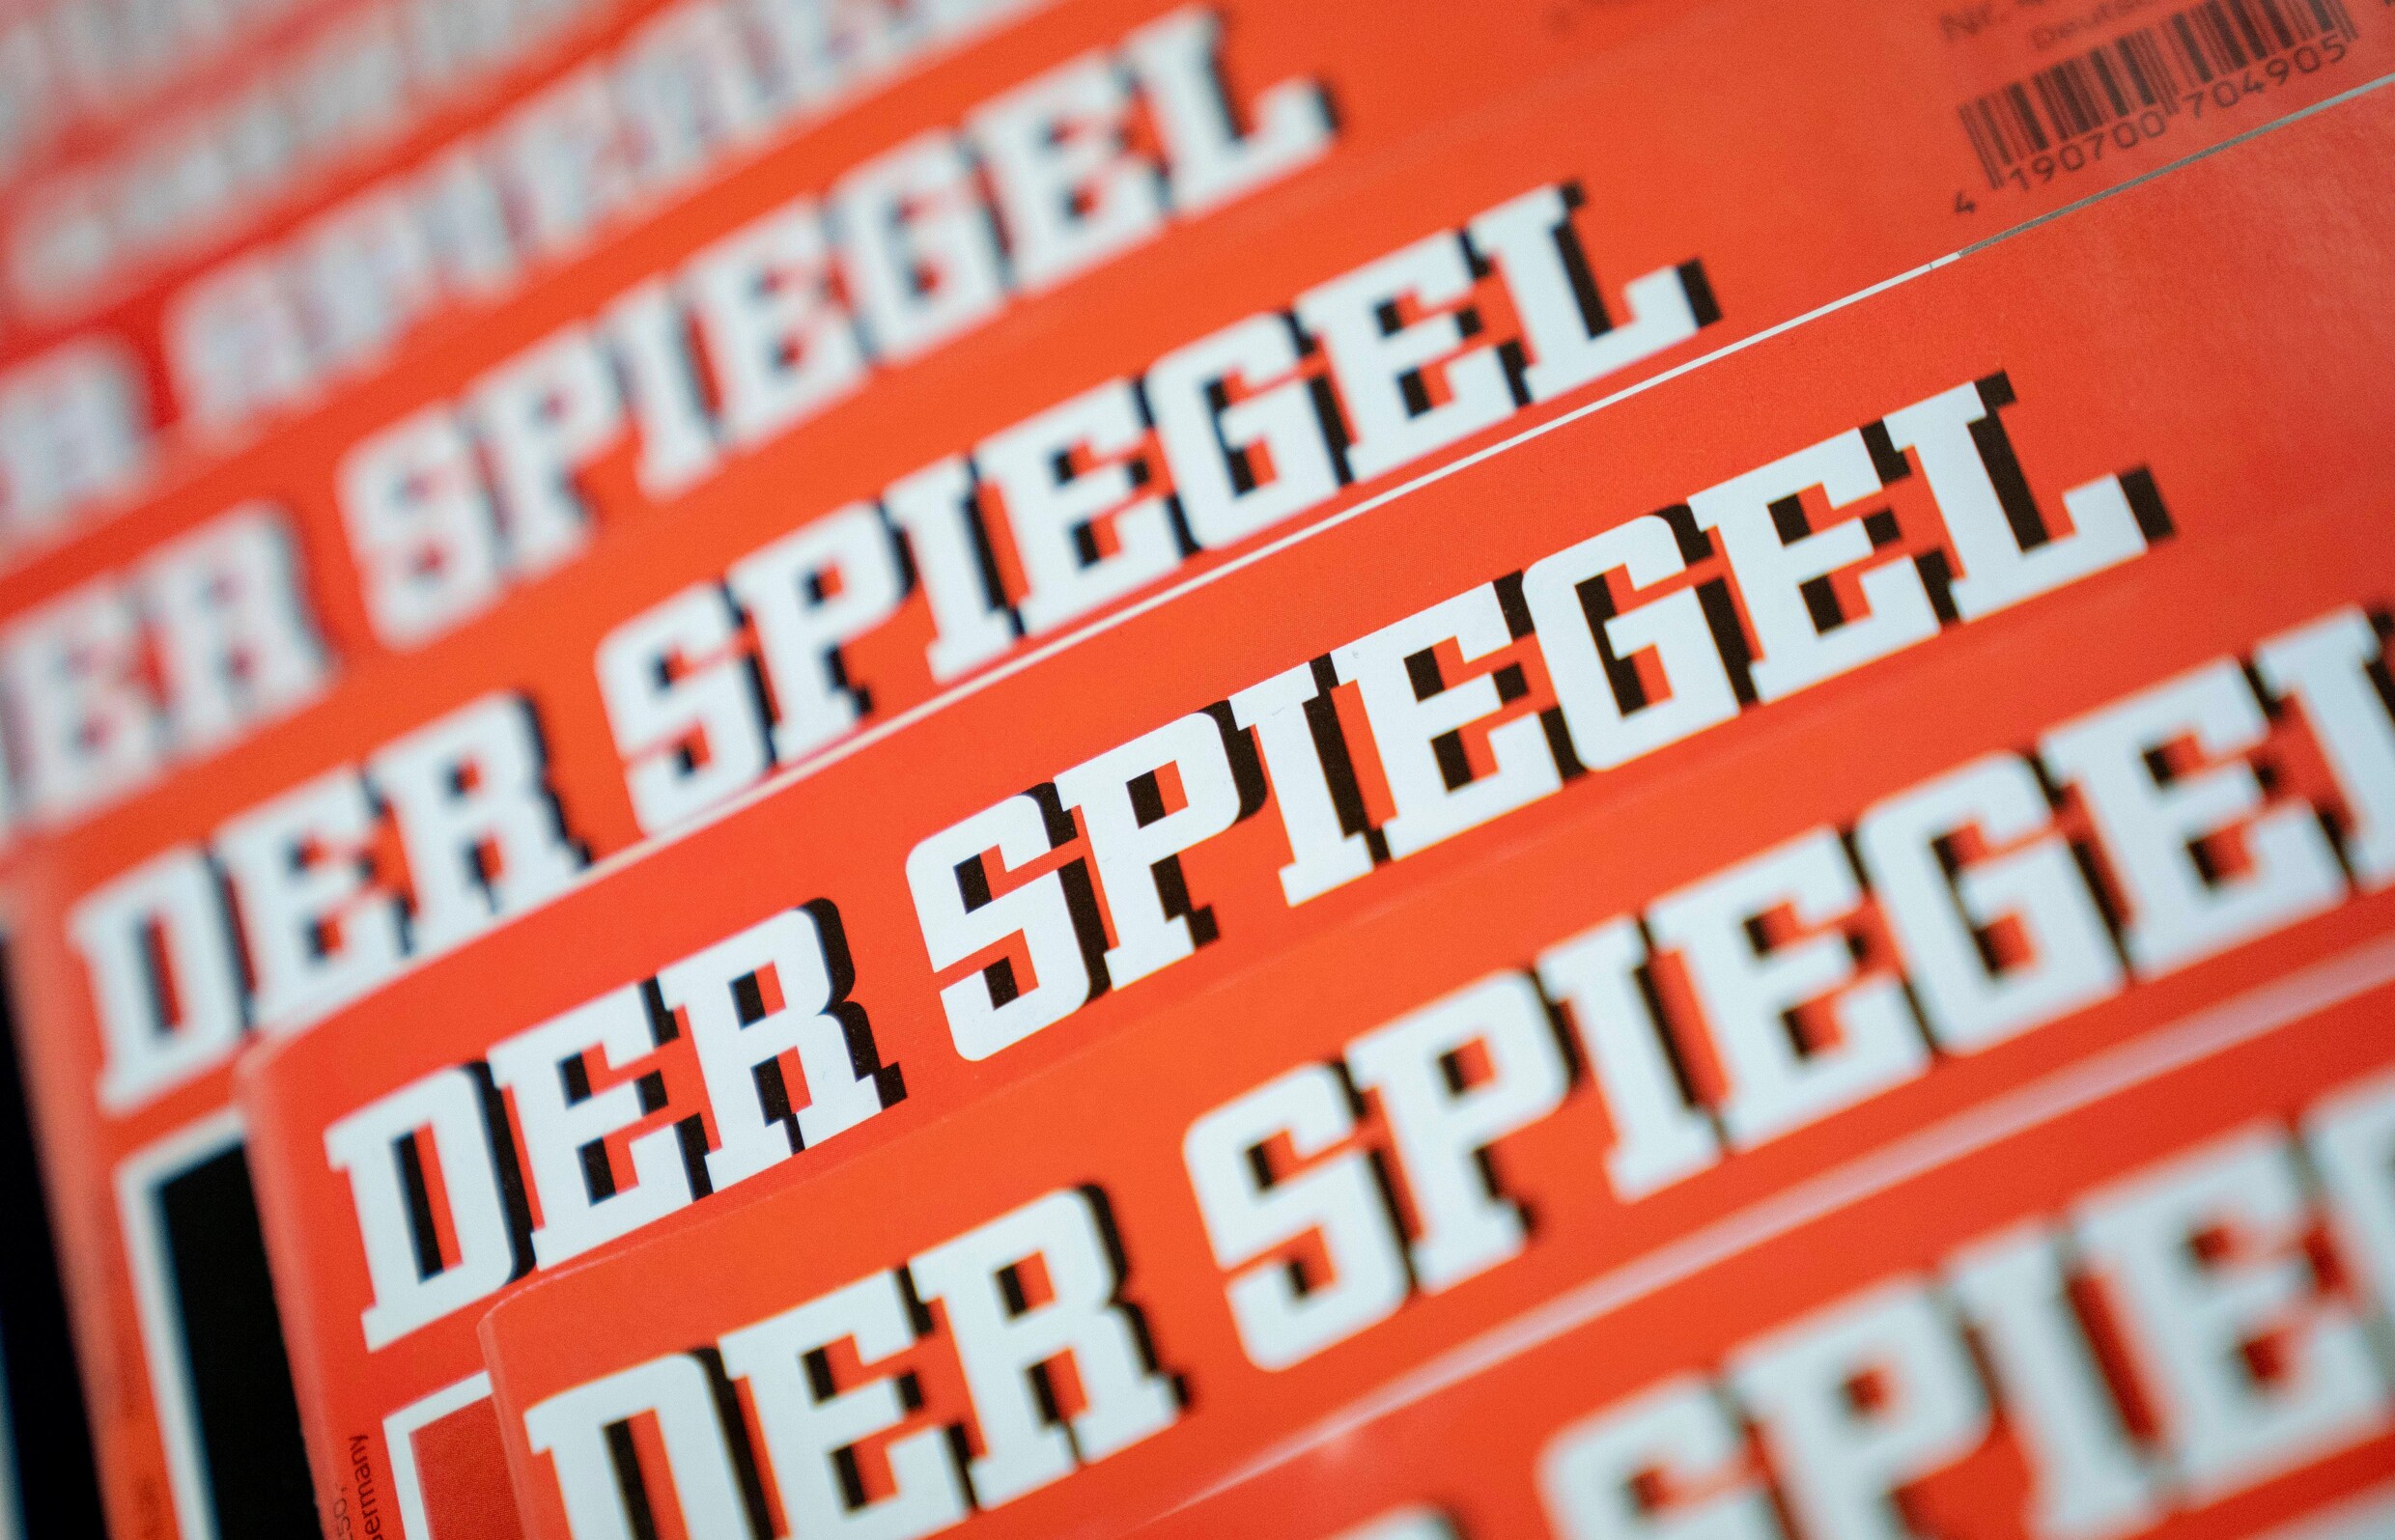 Der Spiegel-journalist die artikels vervalste geeft awards terug